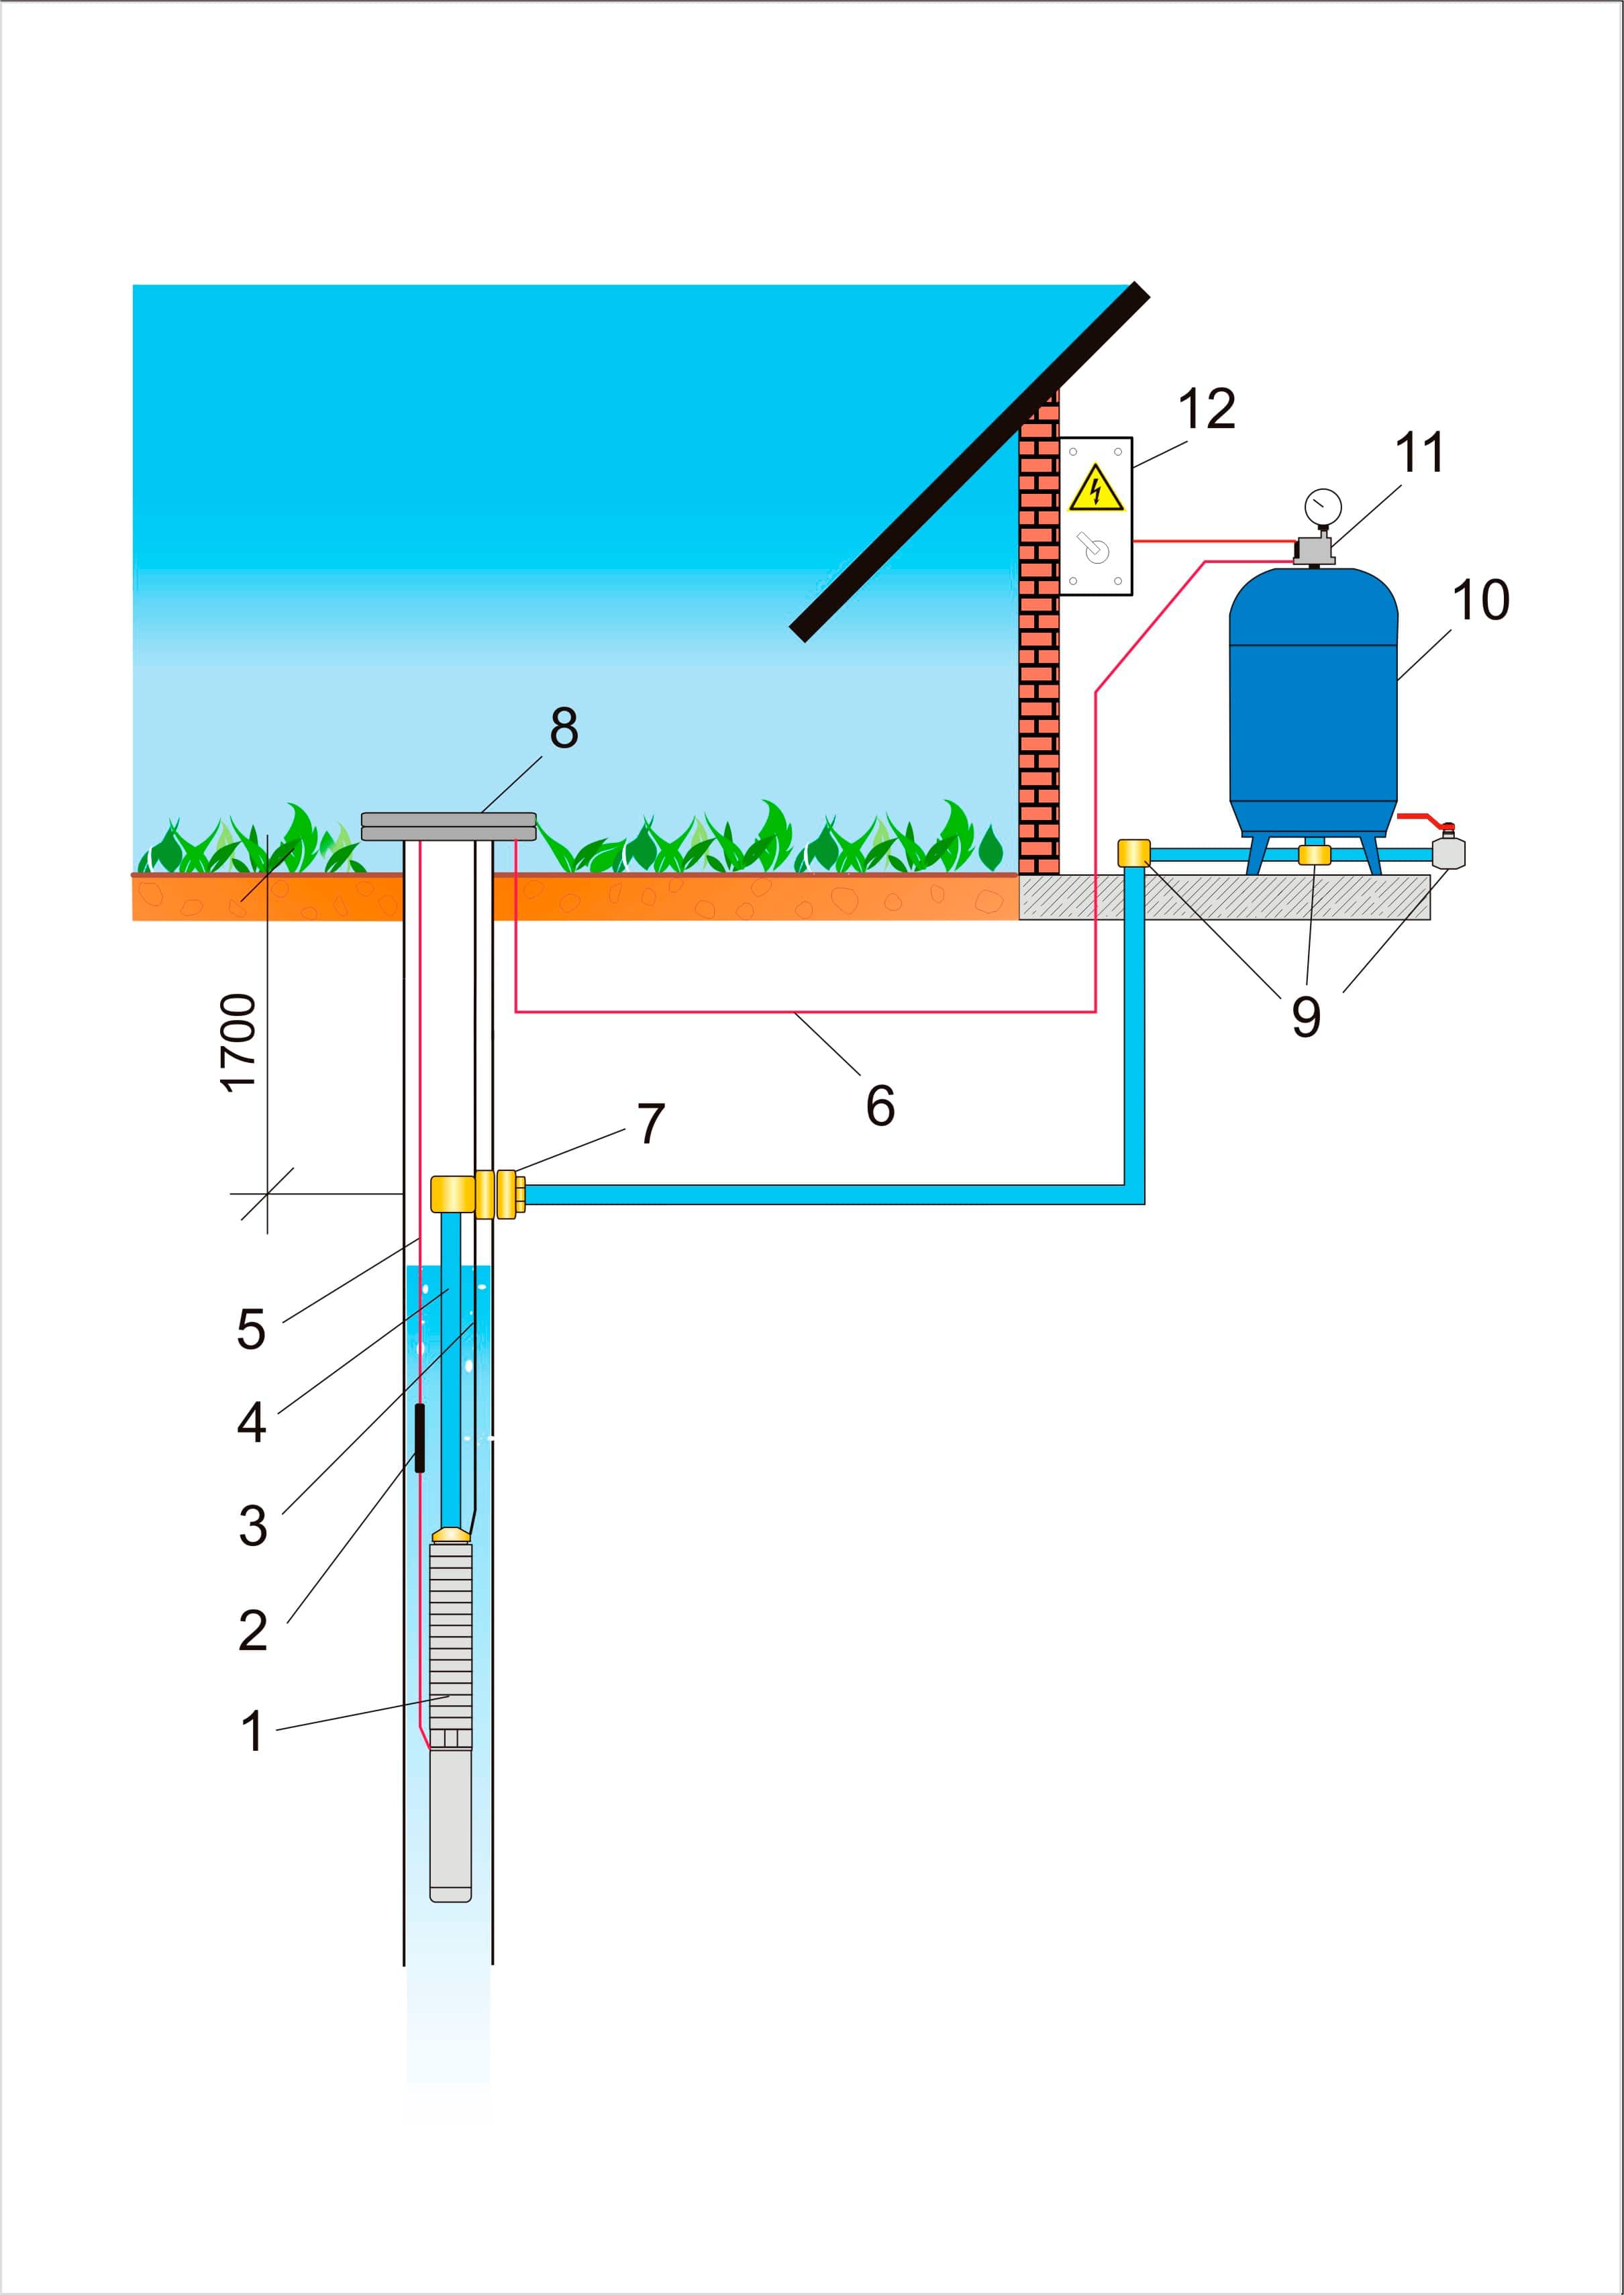 Схема водоподготовки в частном доме от скважины